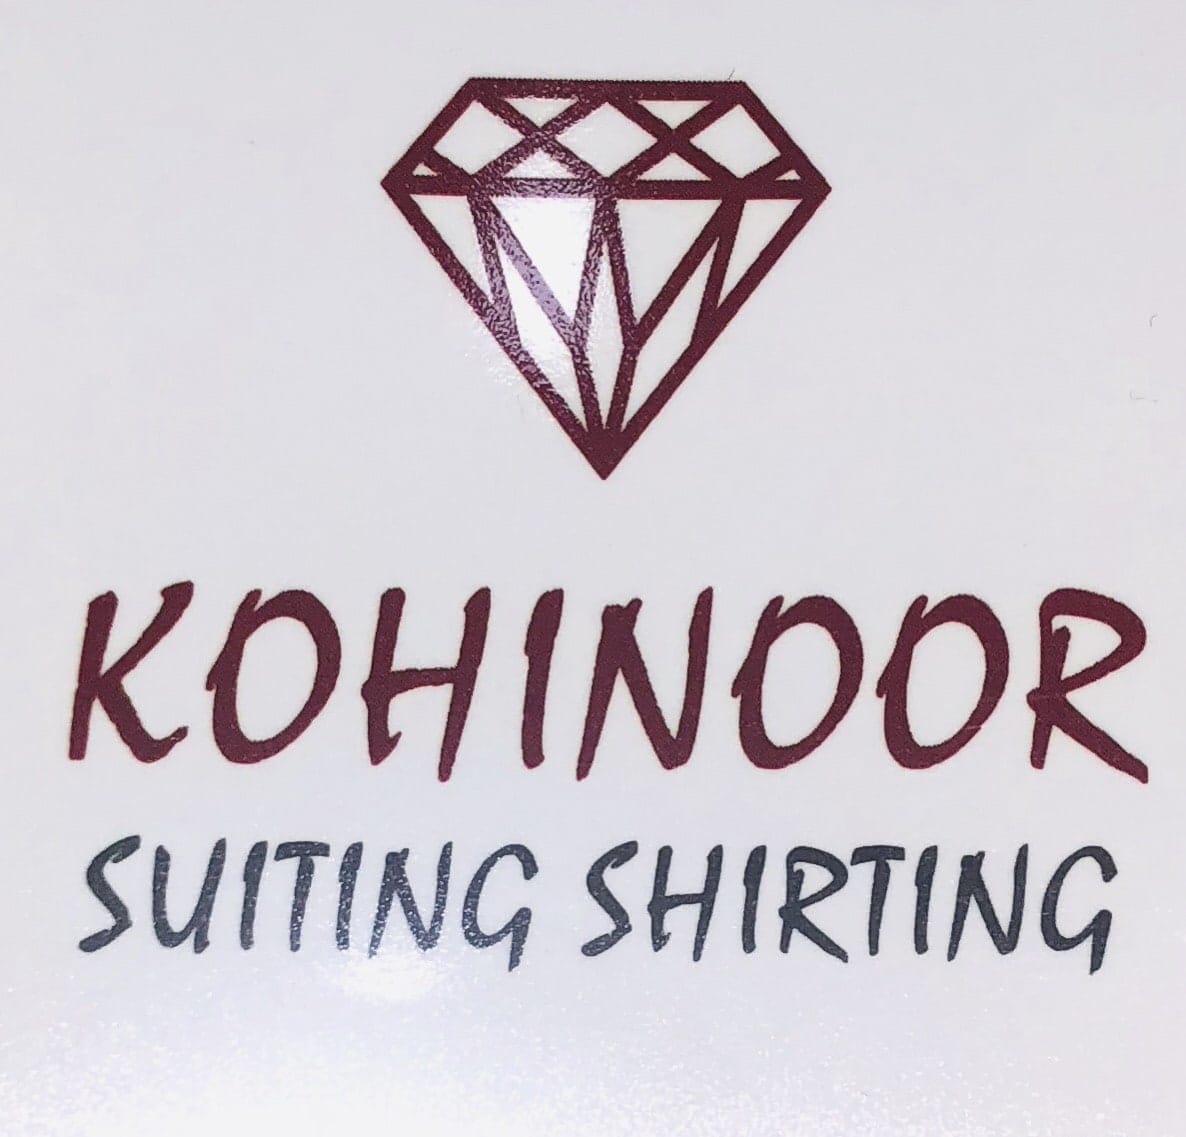 Kohinoor Suitings & Shirtings